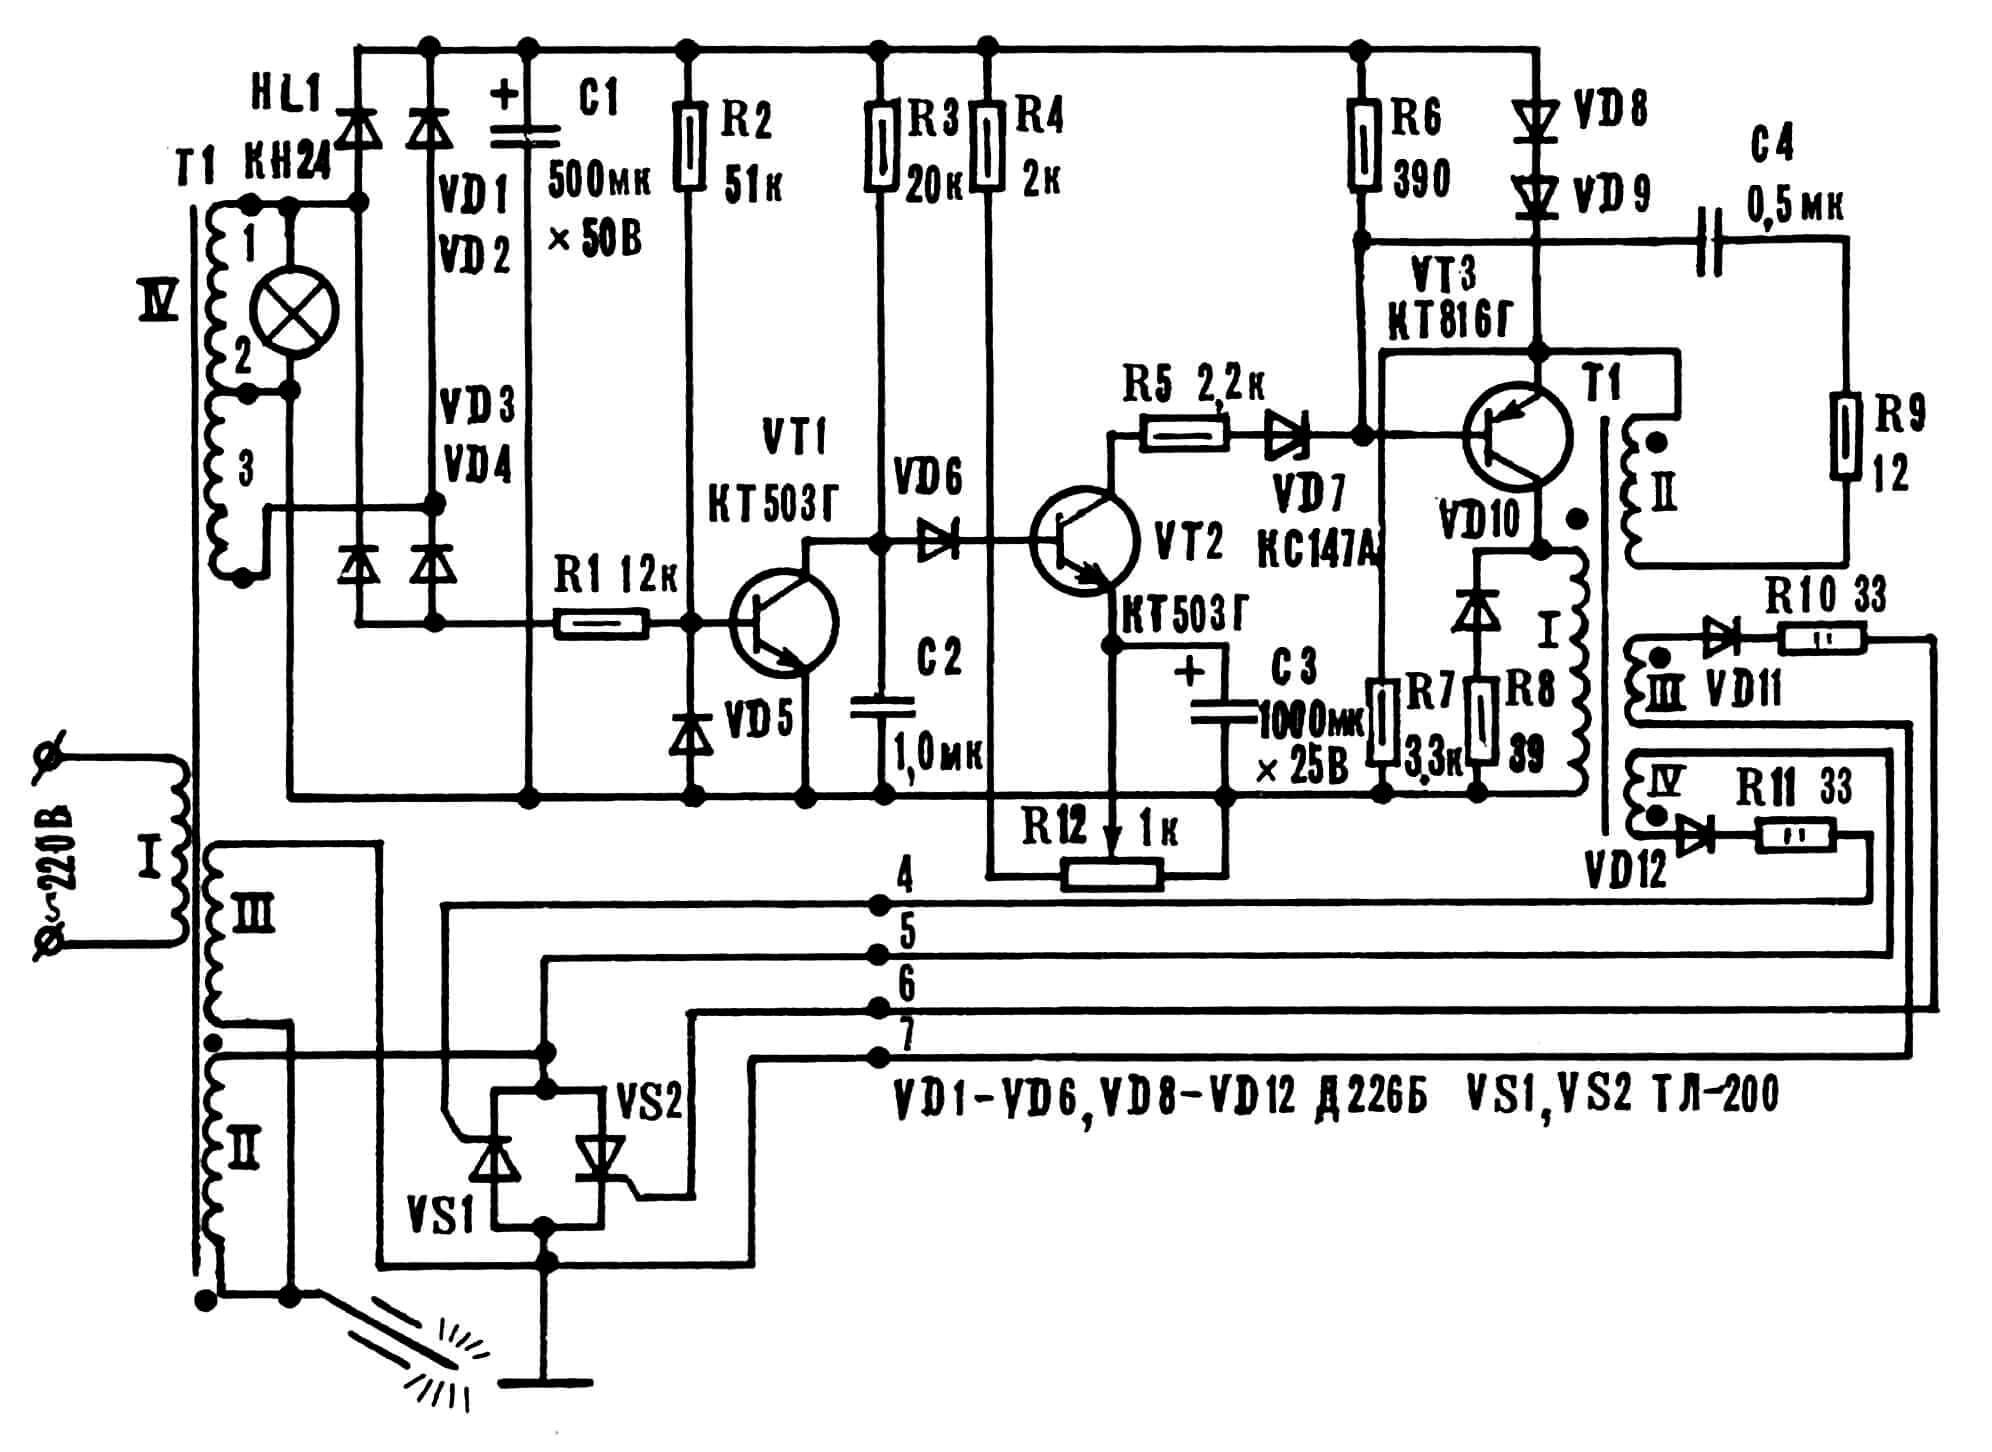 Принципиальная электрическая схема сварочного трансформатора с электронной регулировкой тока.